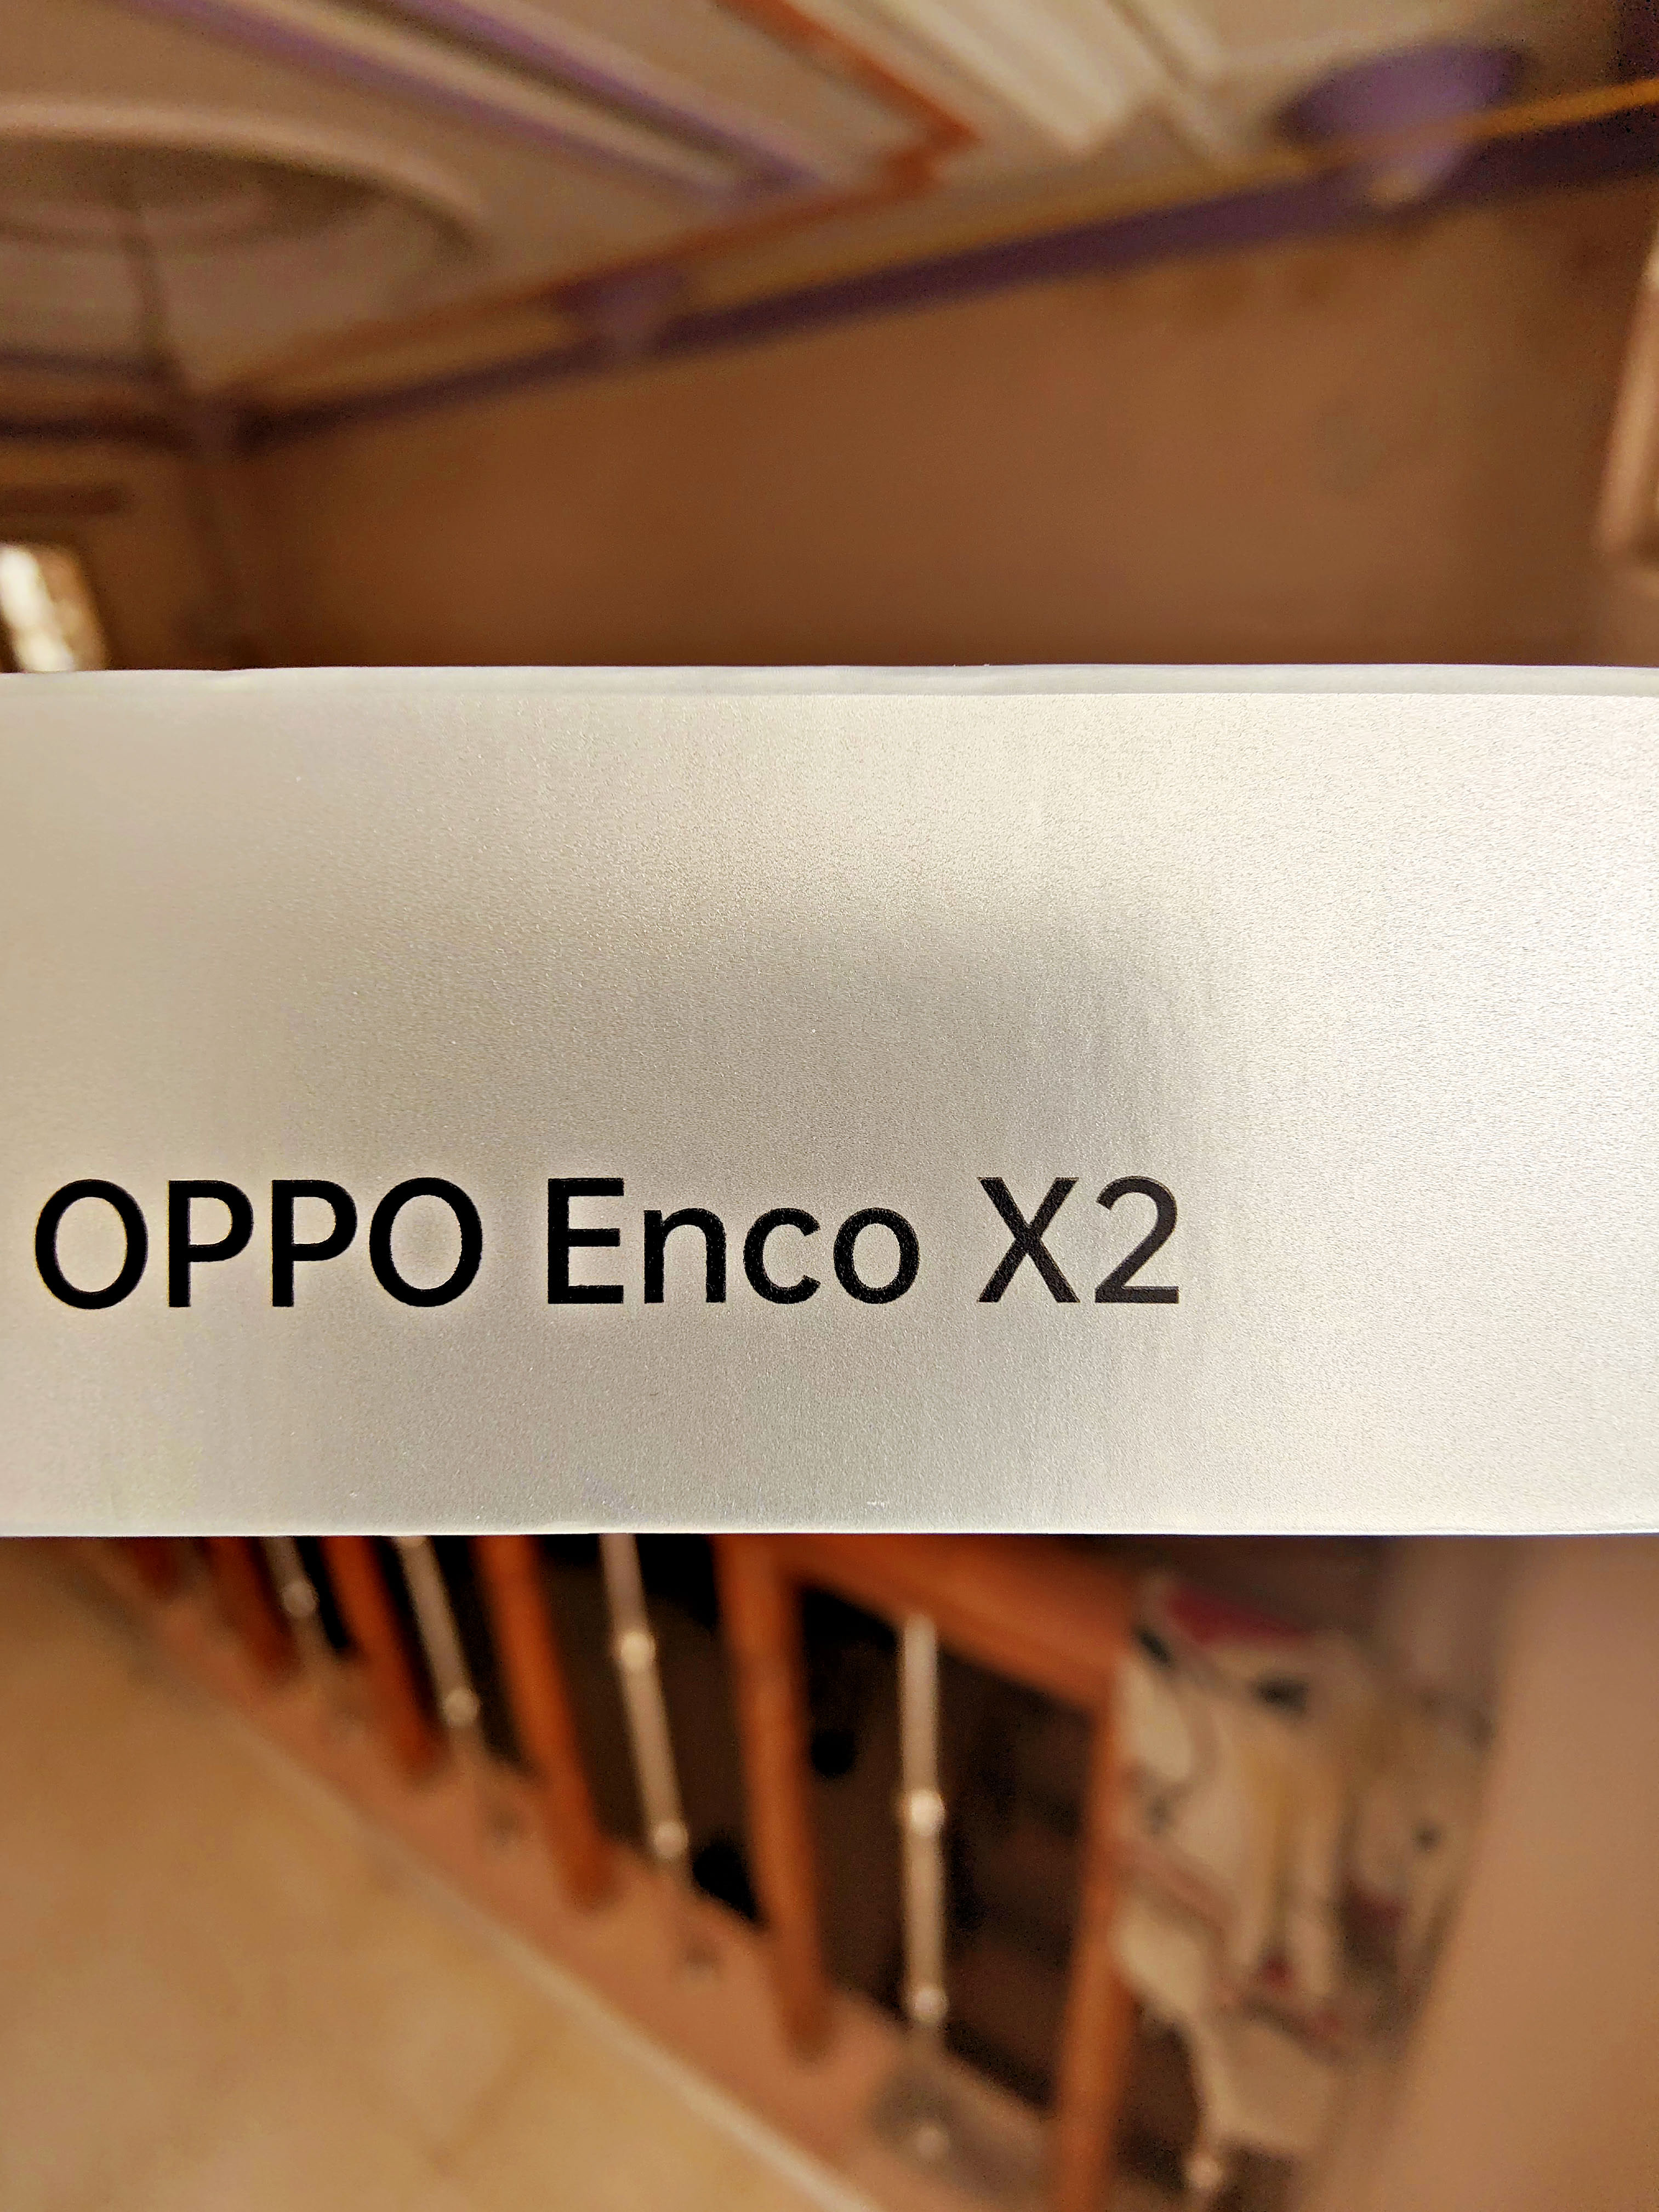 OPPO Enco X2 Specs